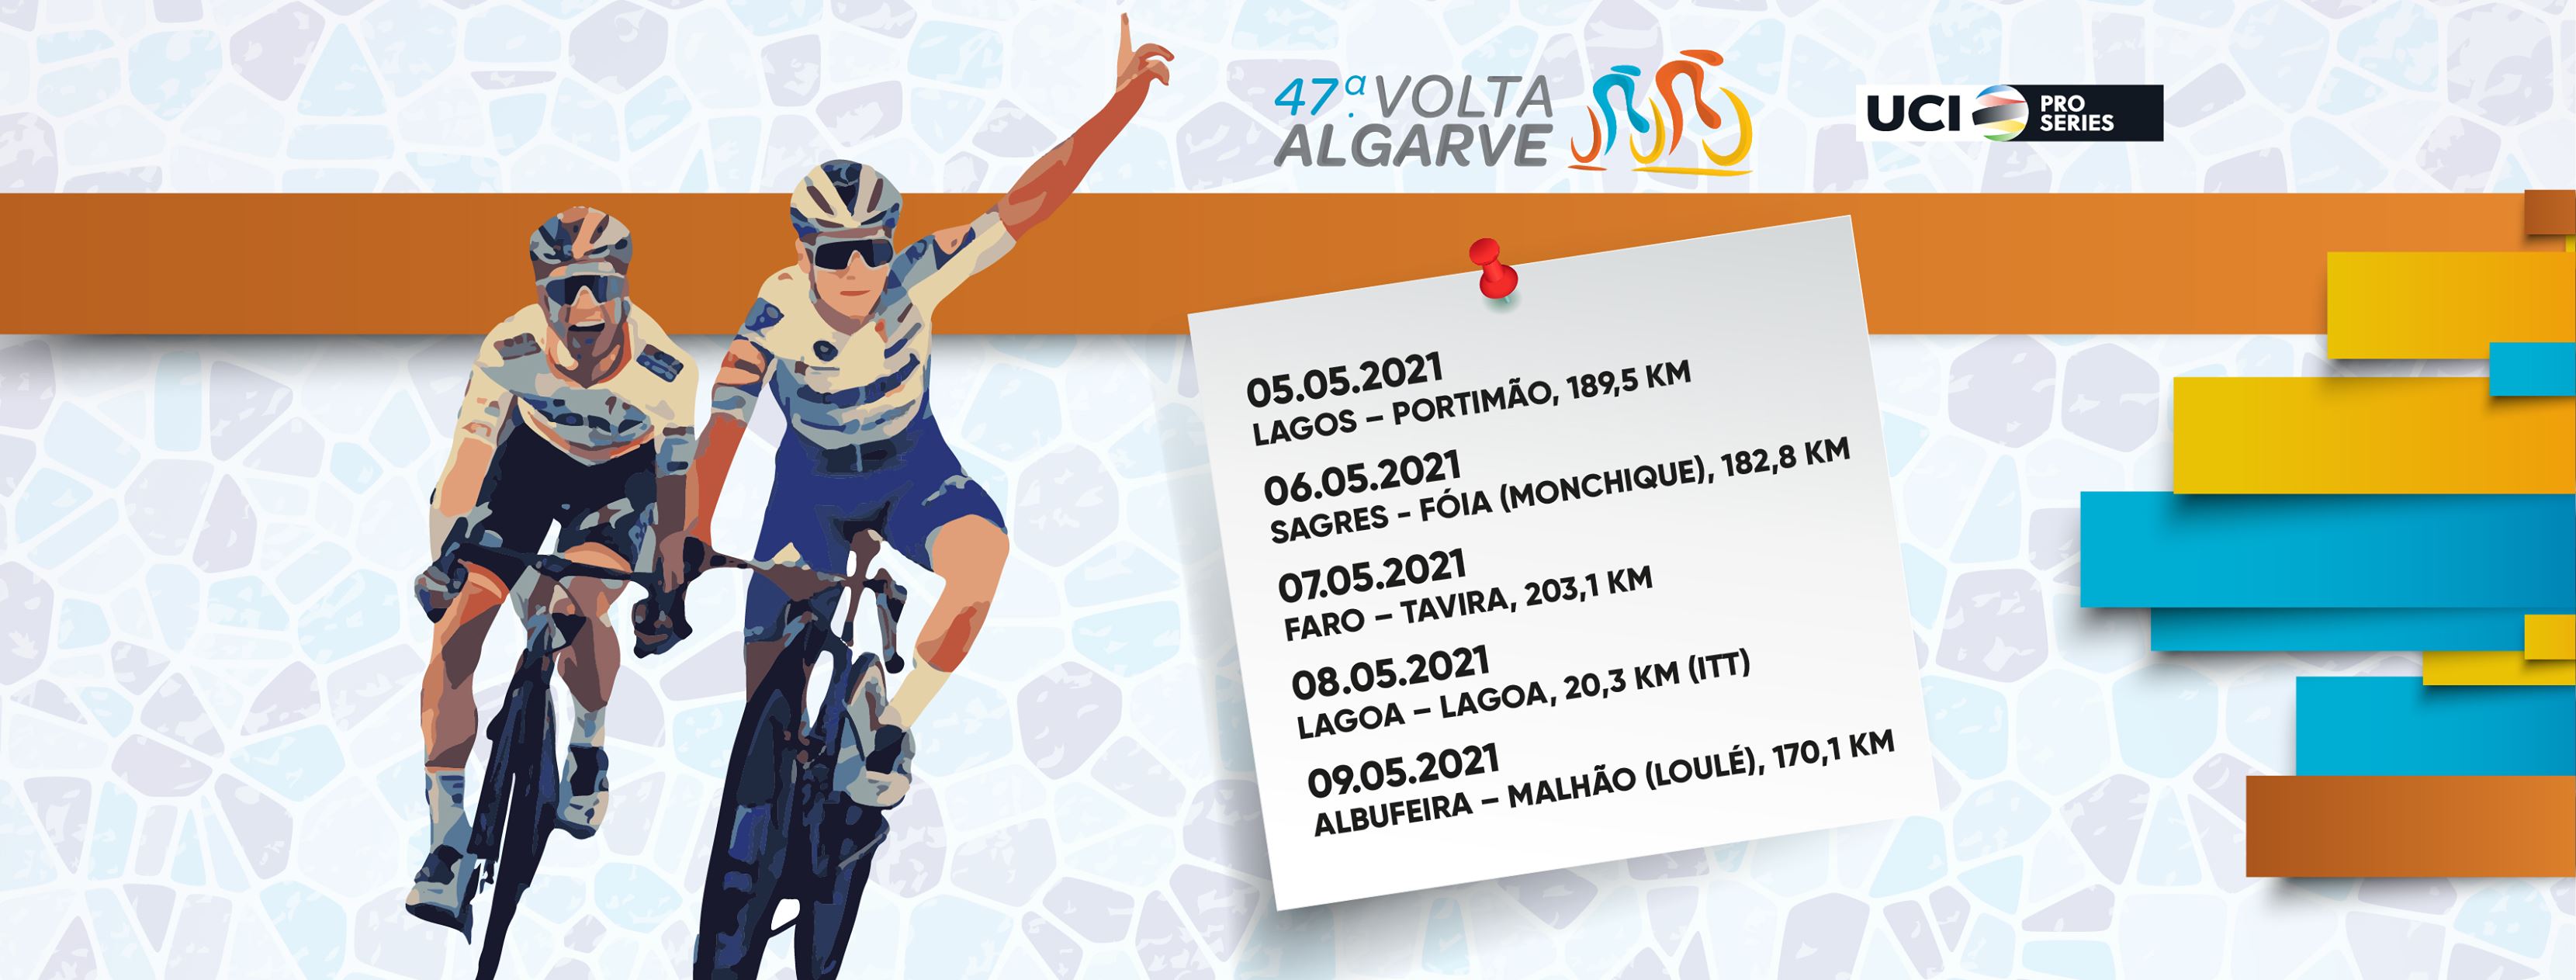 Volta Algarve Etapas, perfiles libro ruta y dorsales Ciclo21